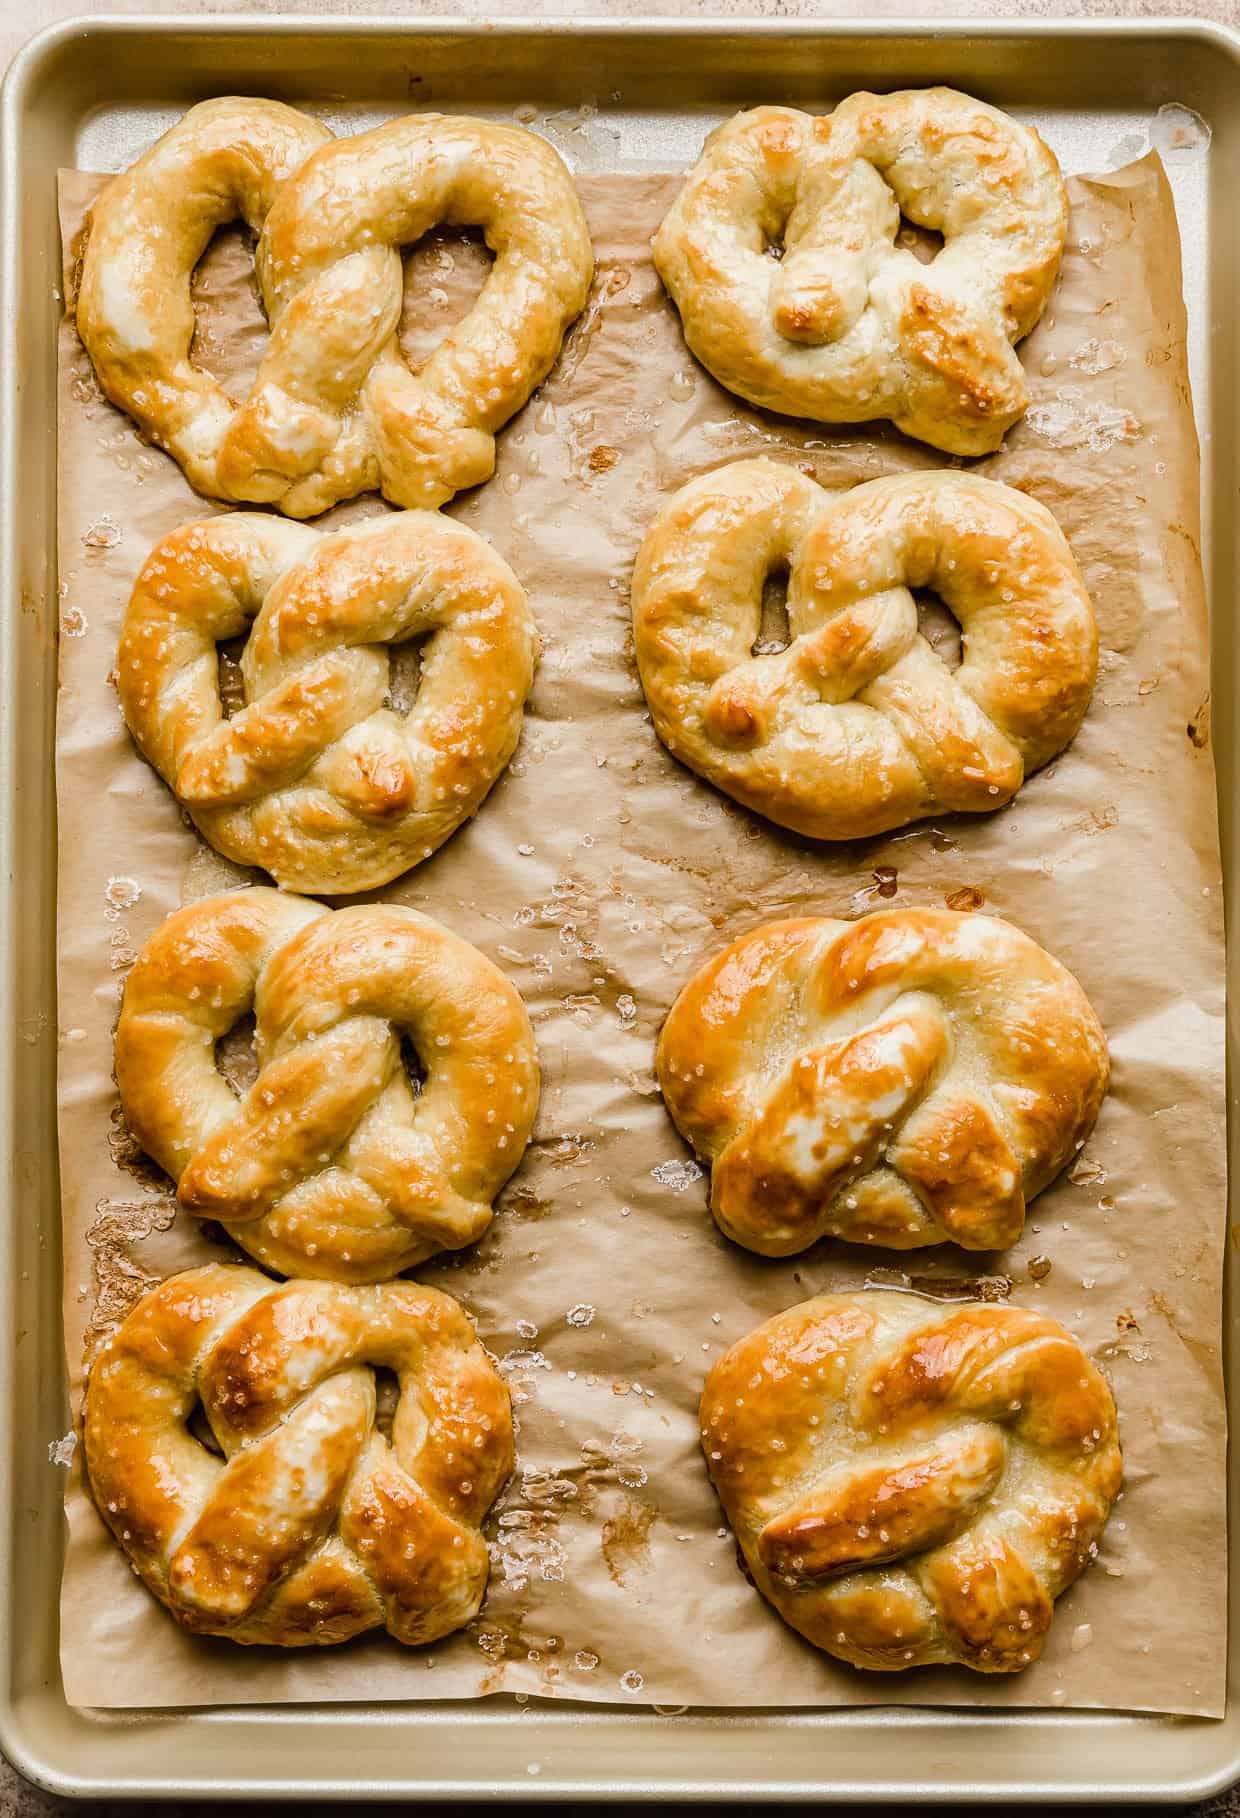 Baked Homemade Soft Pretzels on a baking sheet.